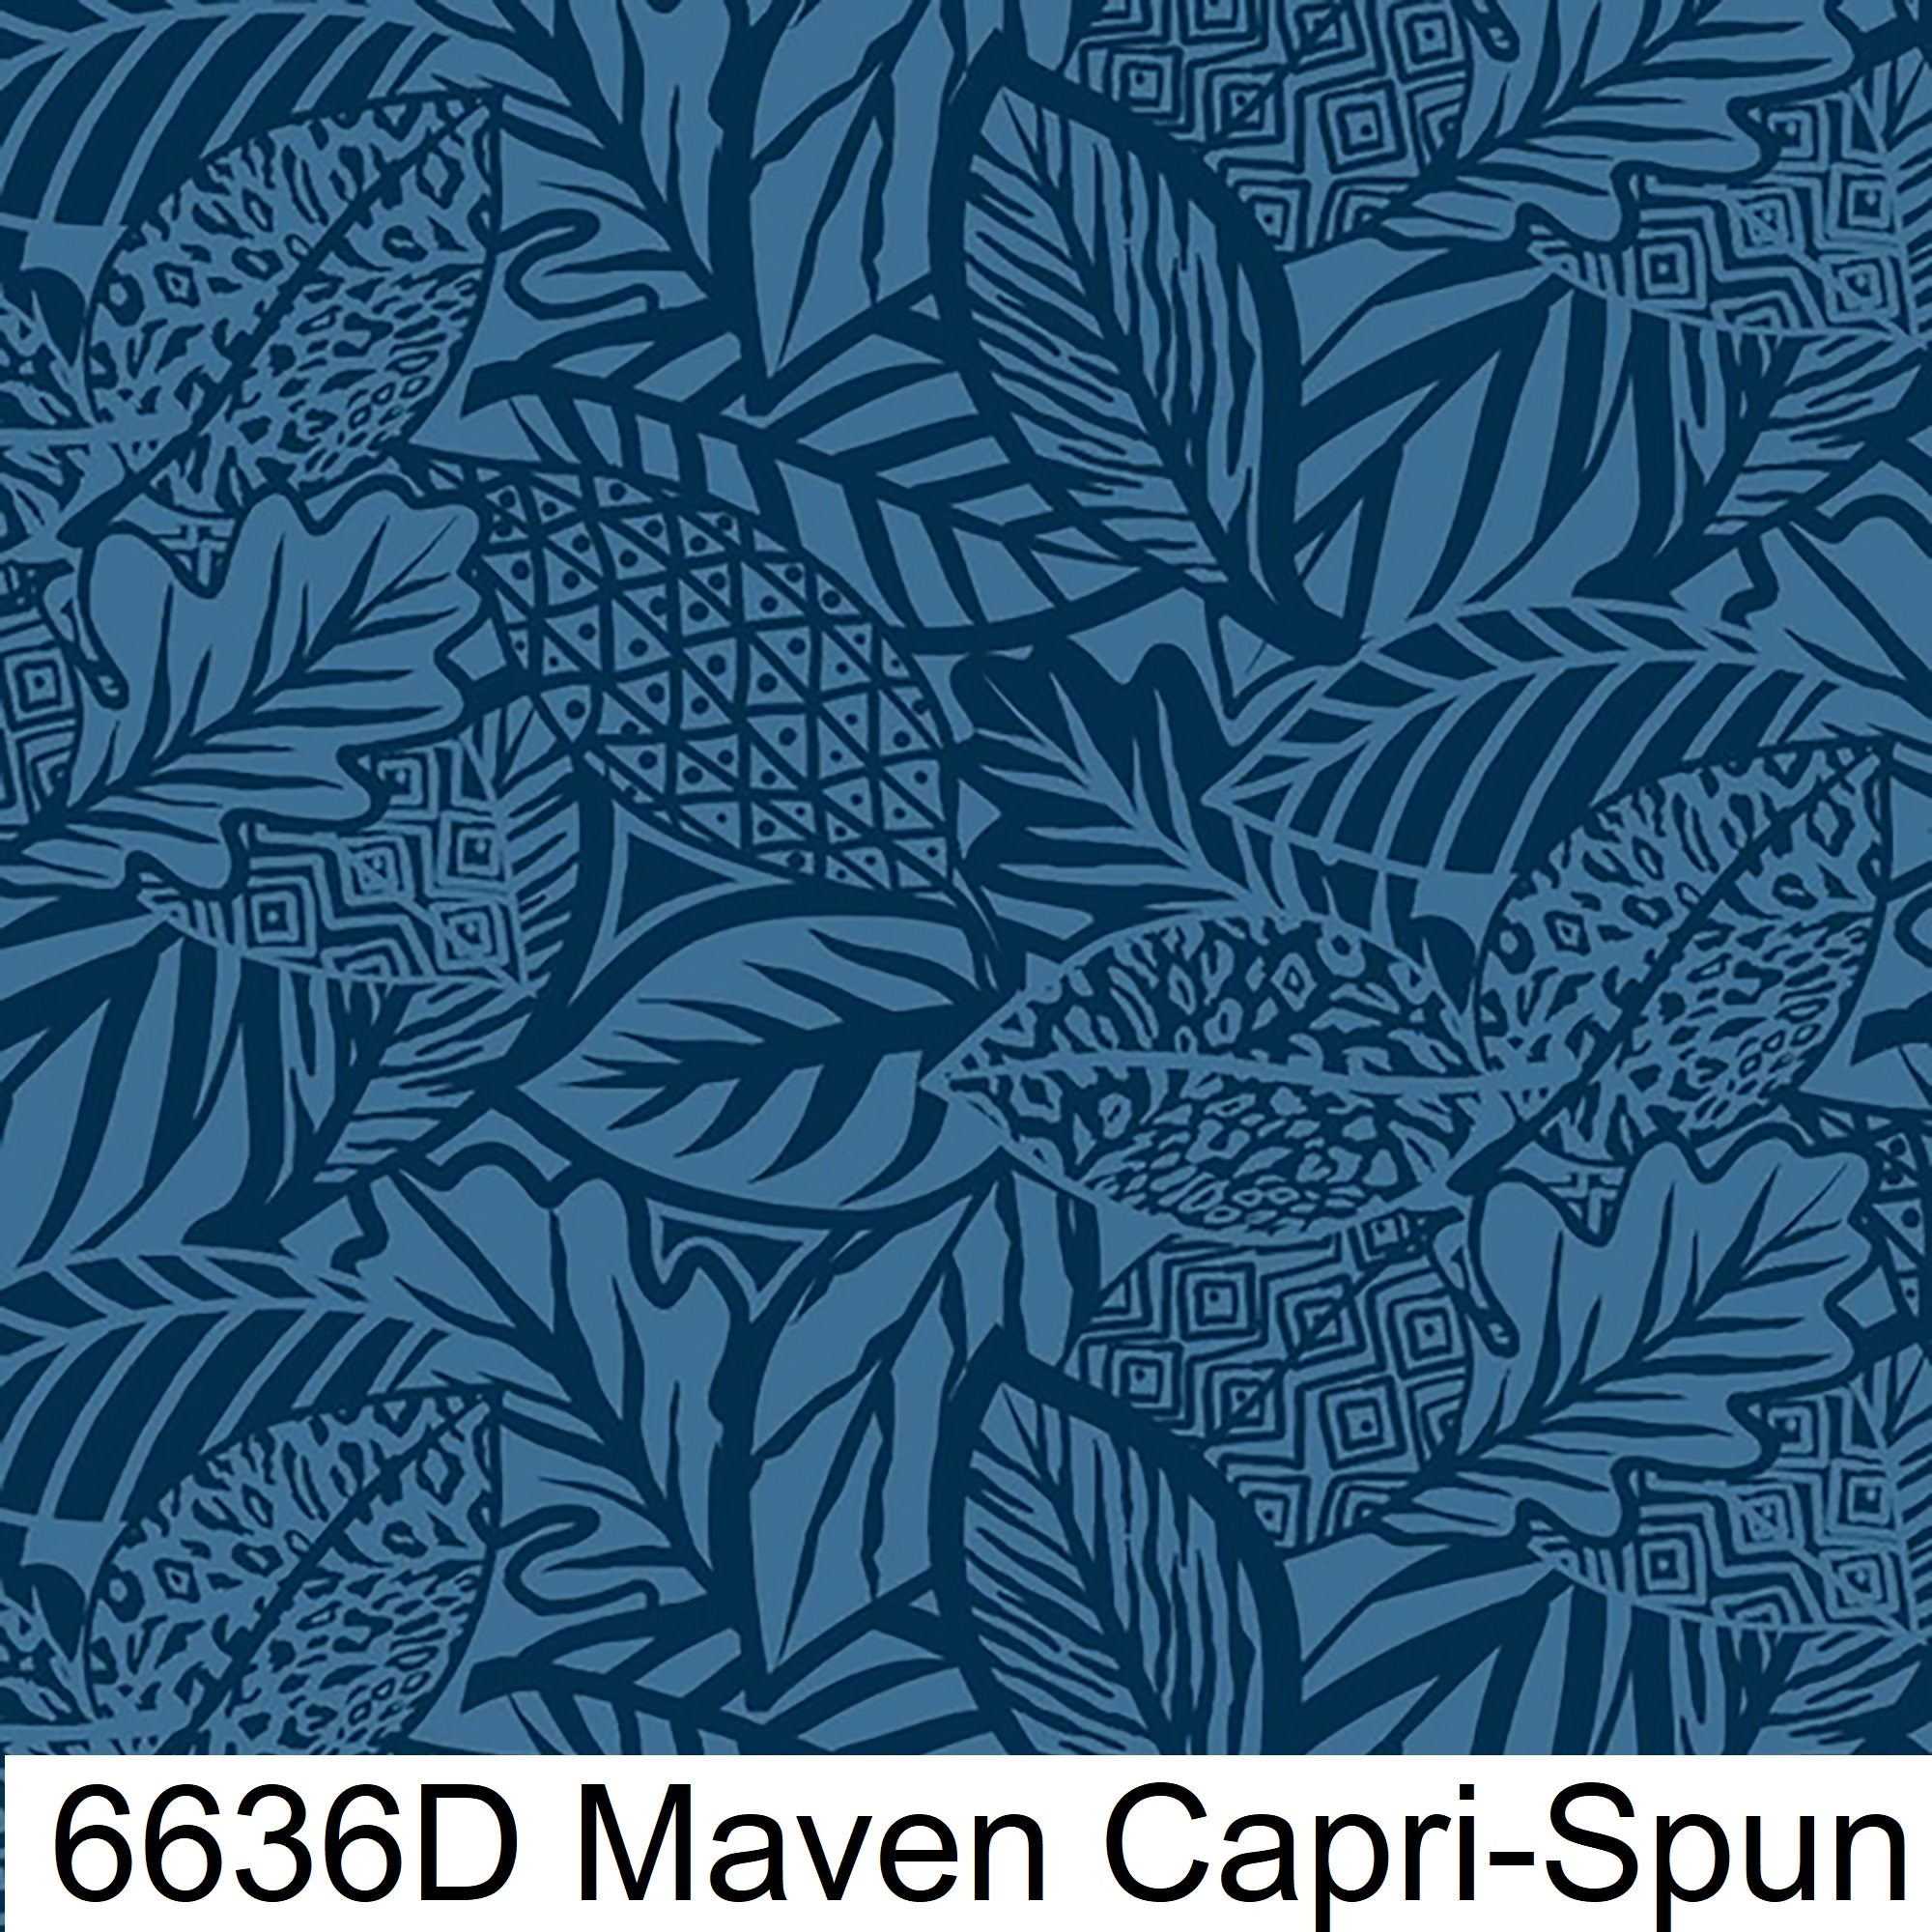 6636D Maven Capri-Spun